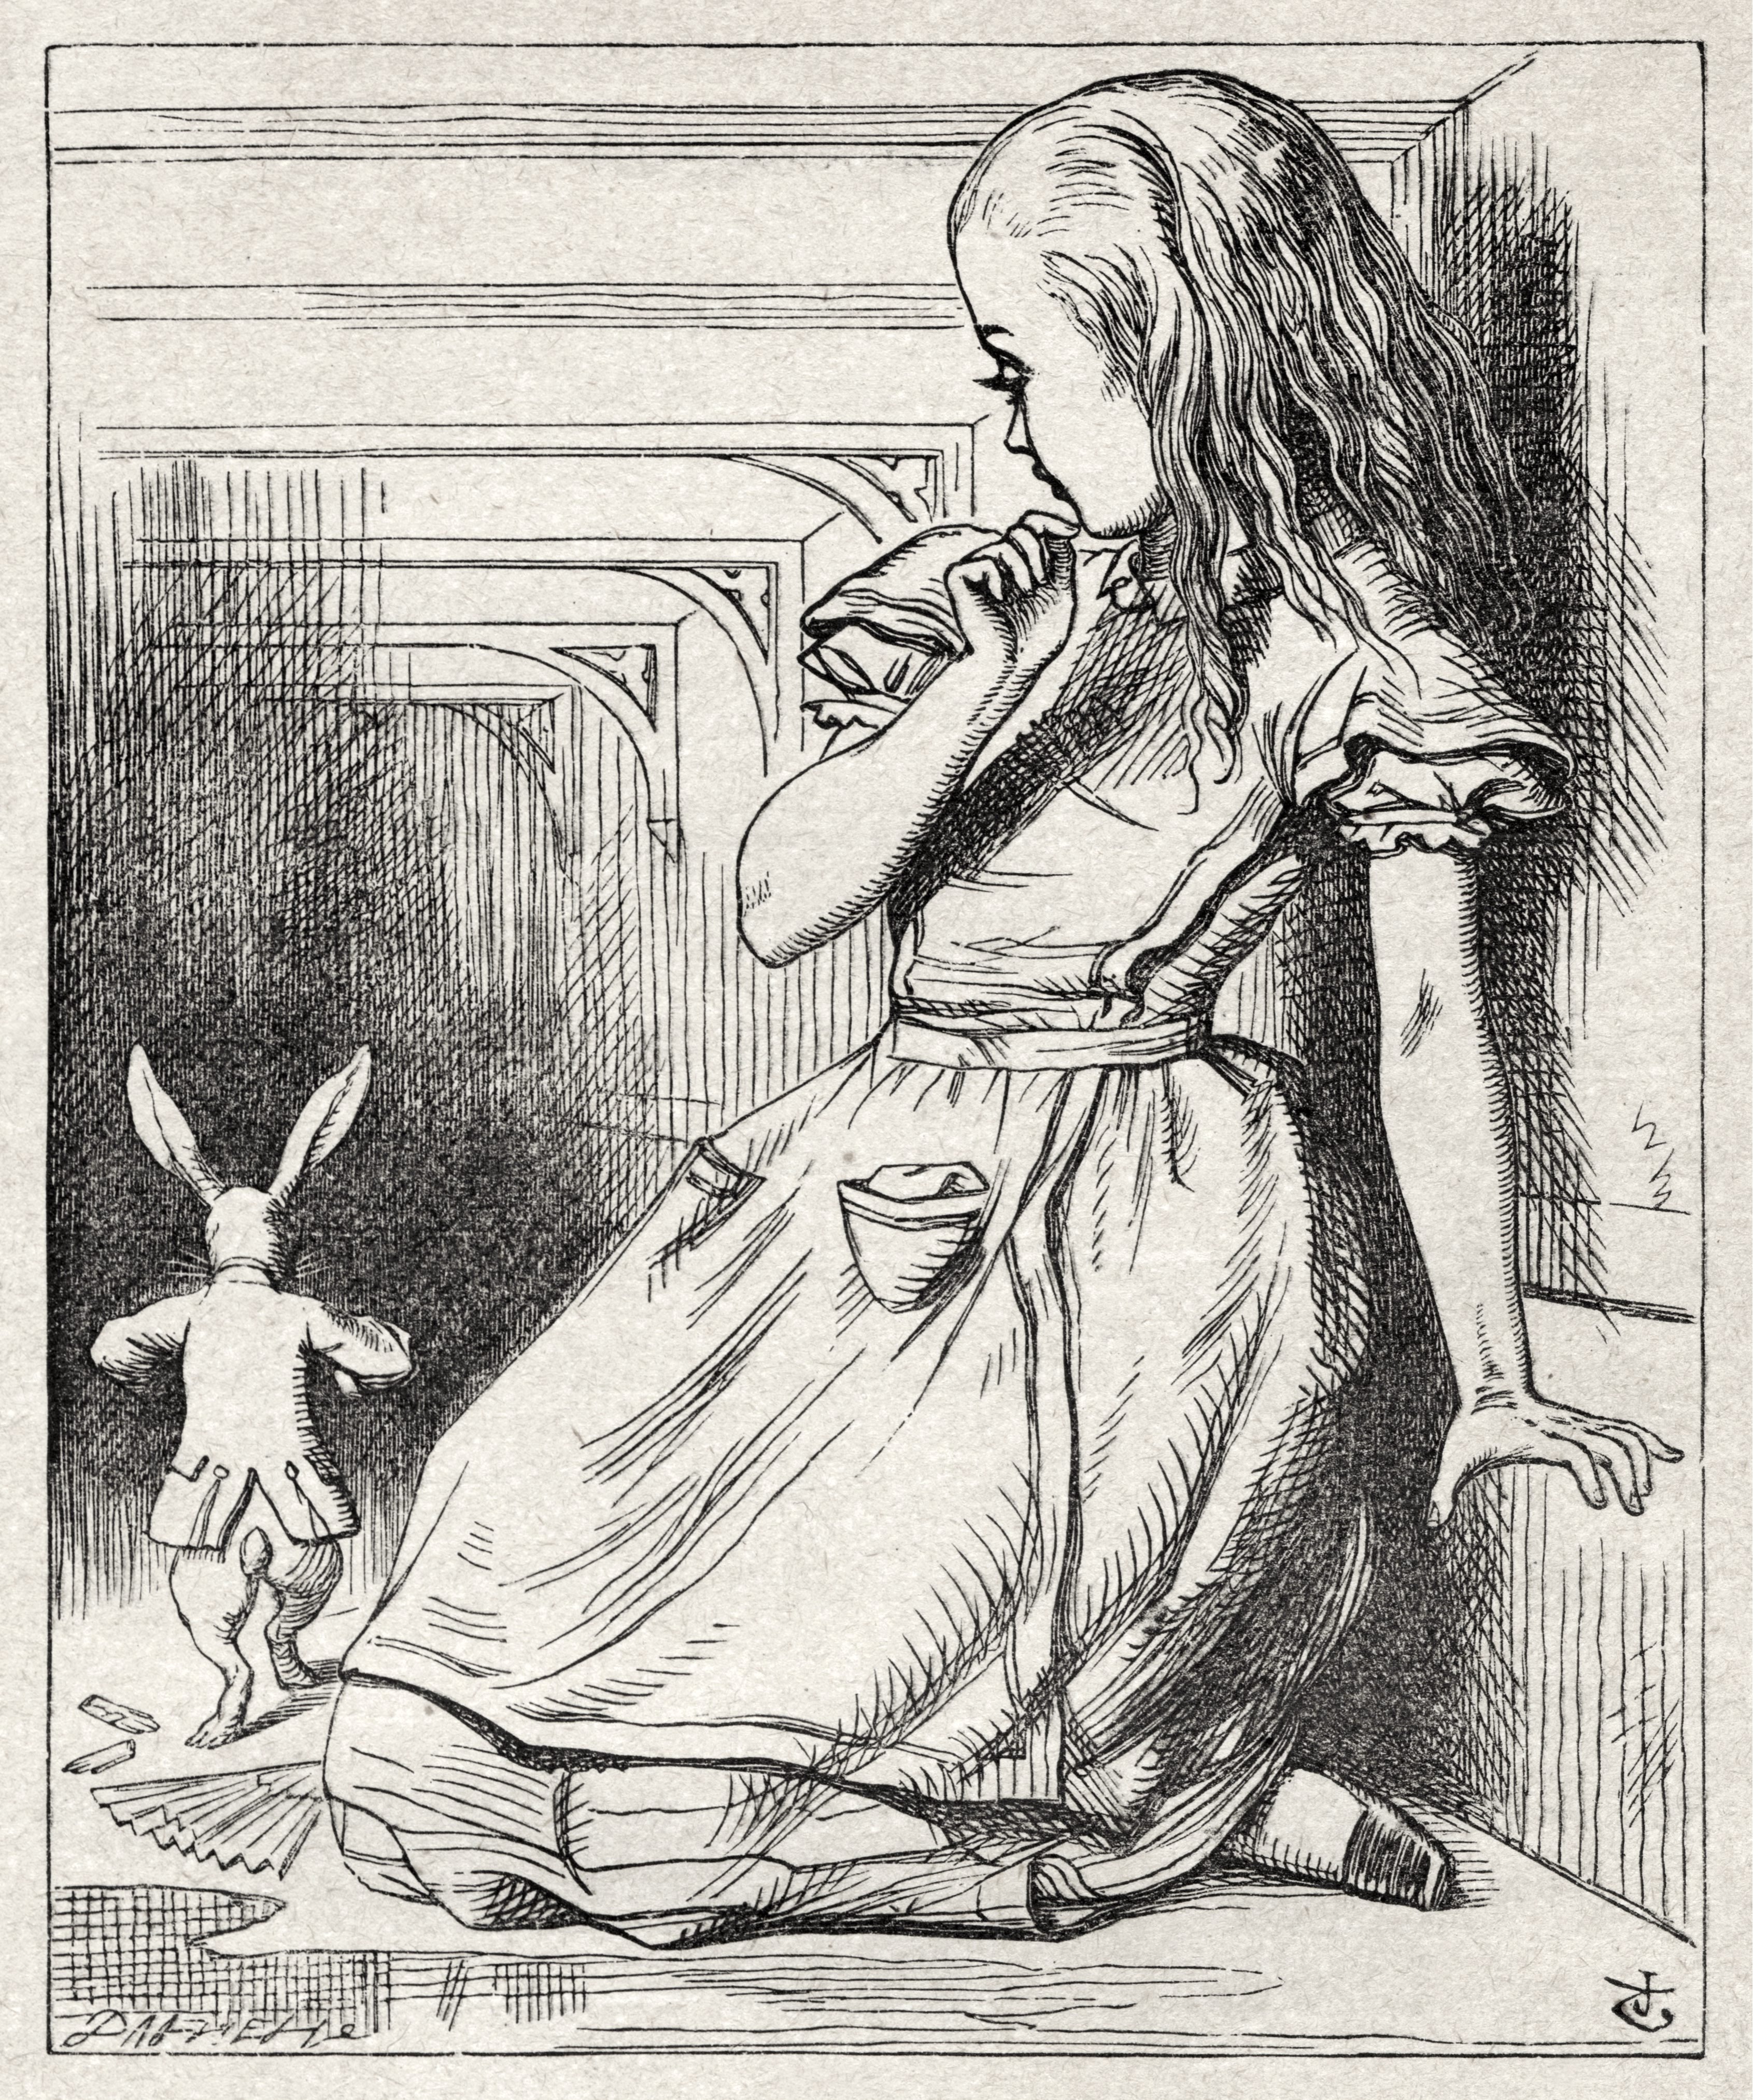 Алиса в стране чудес первая глава. Джон Тенниел иллюстрации Алиса в стране чудес. Джон Тенниел Алиса в стране чудес. Иллюстрации Джона Тенниела к Алисе в стране чудес. Алиса в Зазеркалье Льюис Кэрролл Джона Тенниела.